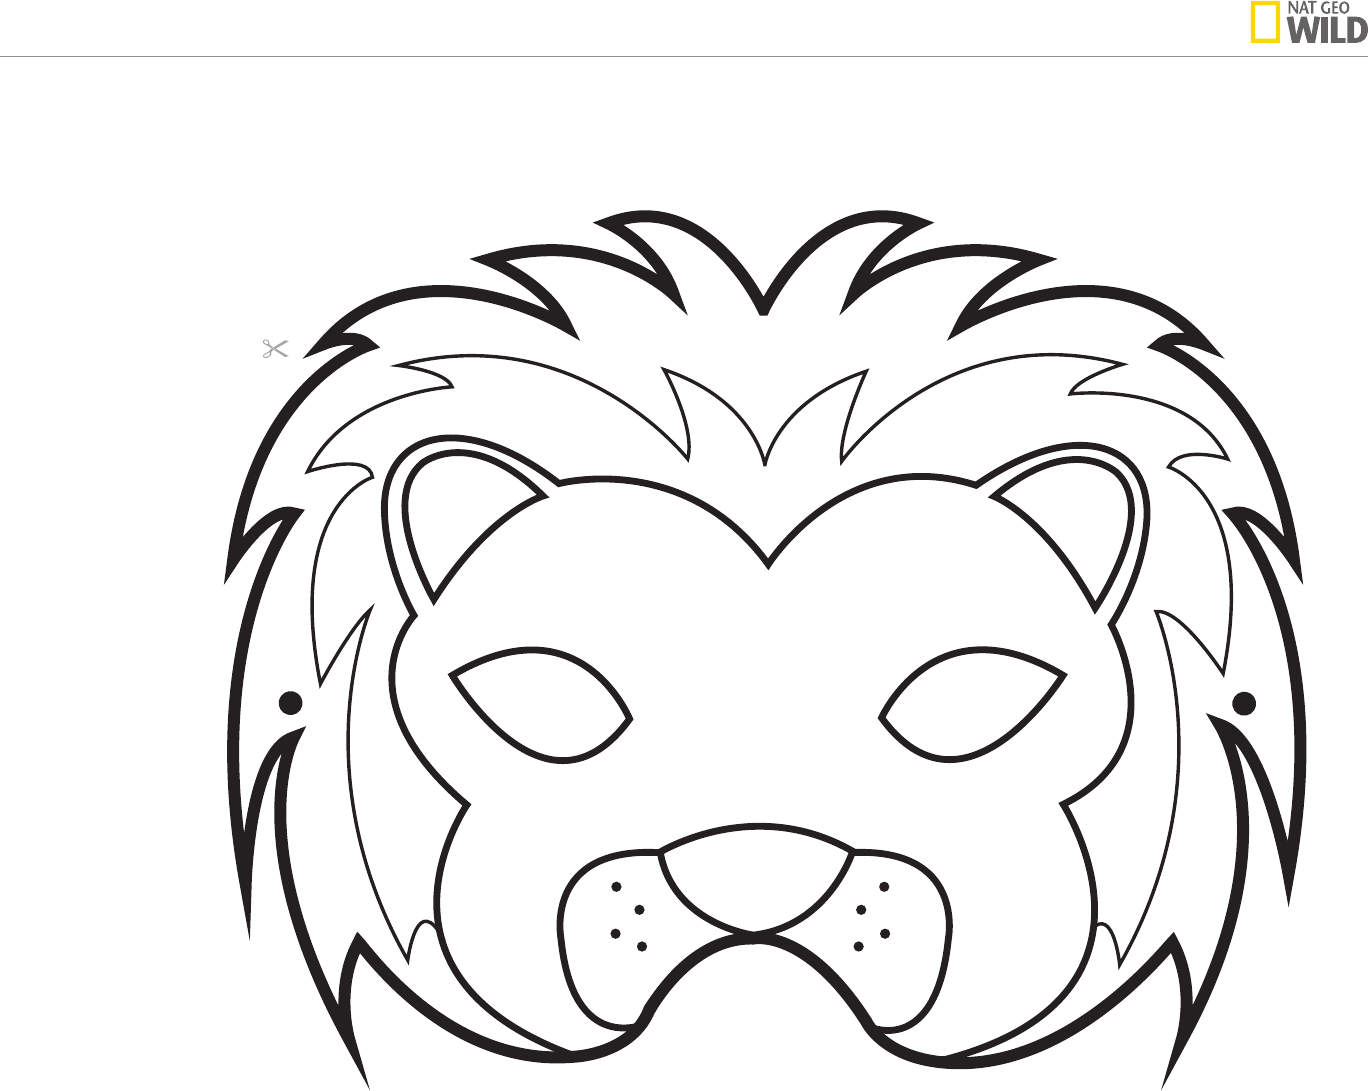 Mаска льва на голову своими руками из картона и бумаги: как сделать маску львенка, распечатать шаблоны мордочки для детей на голову